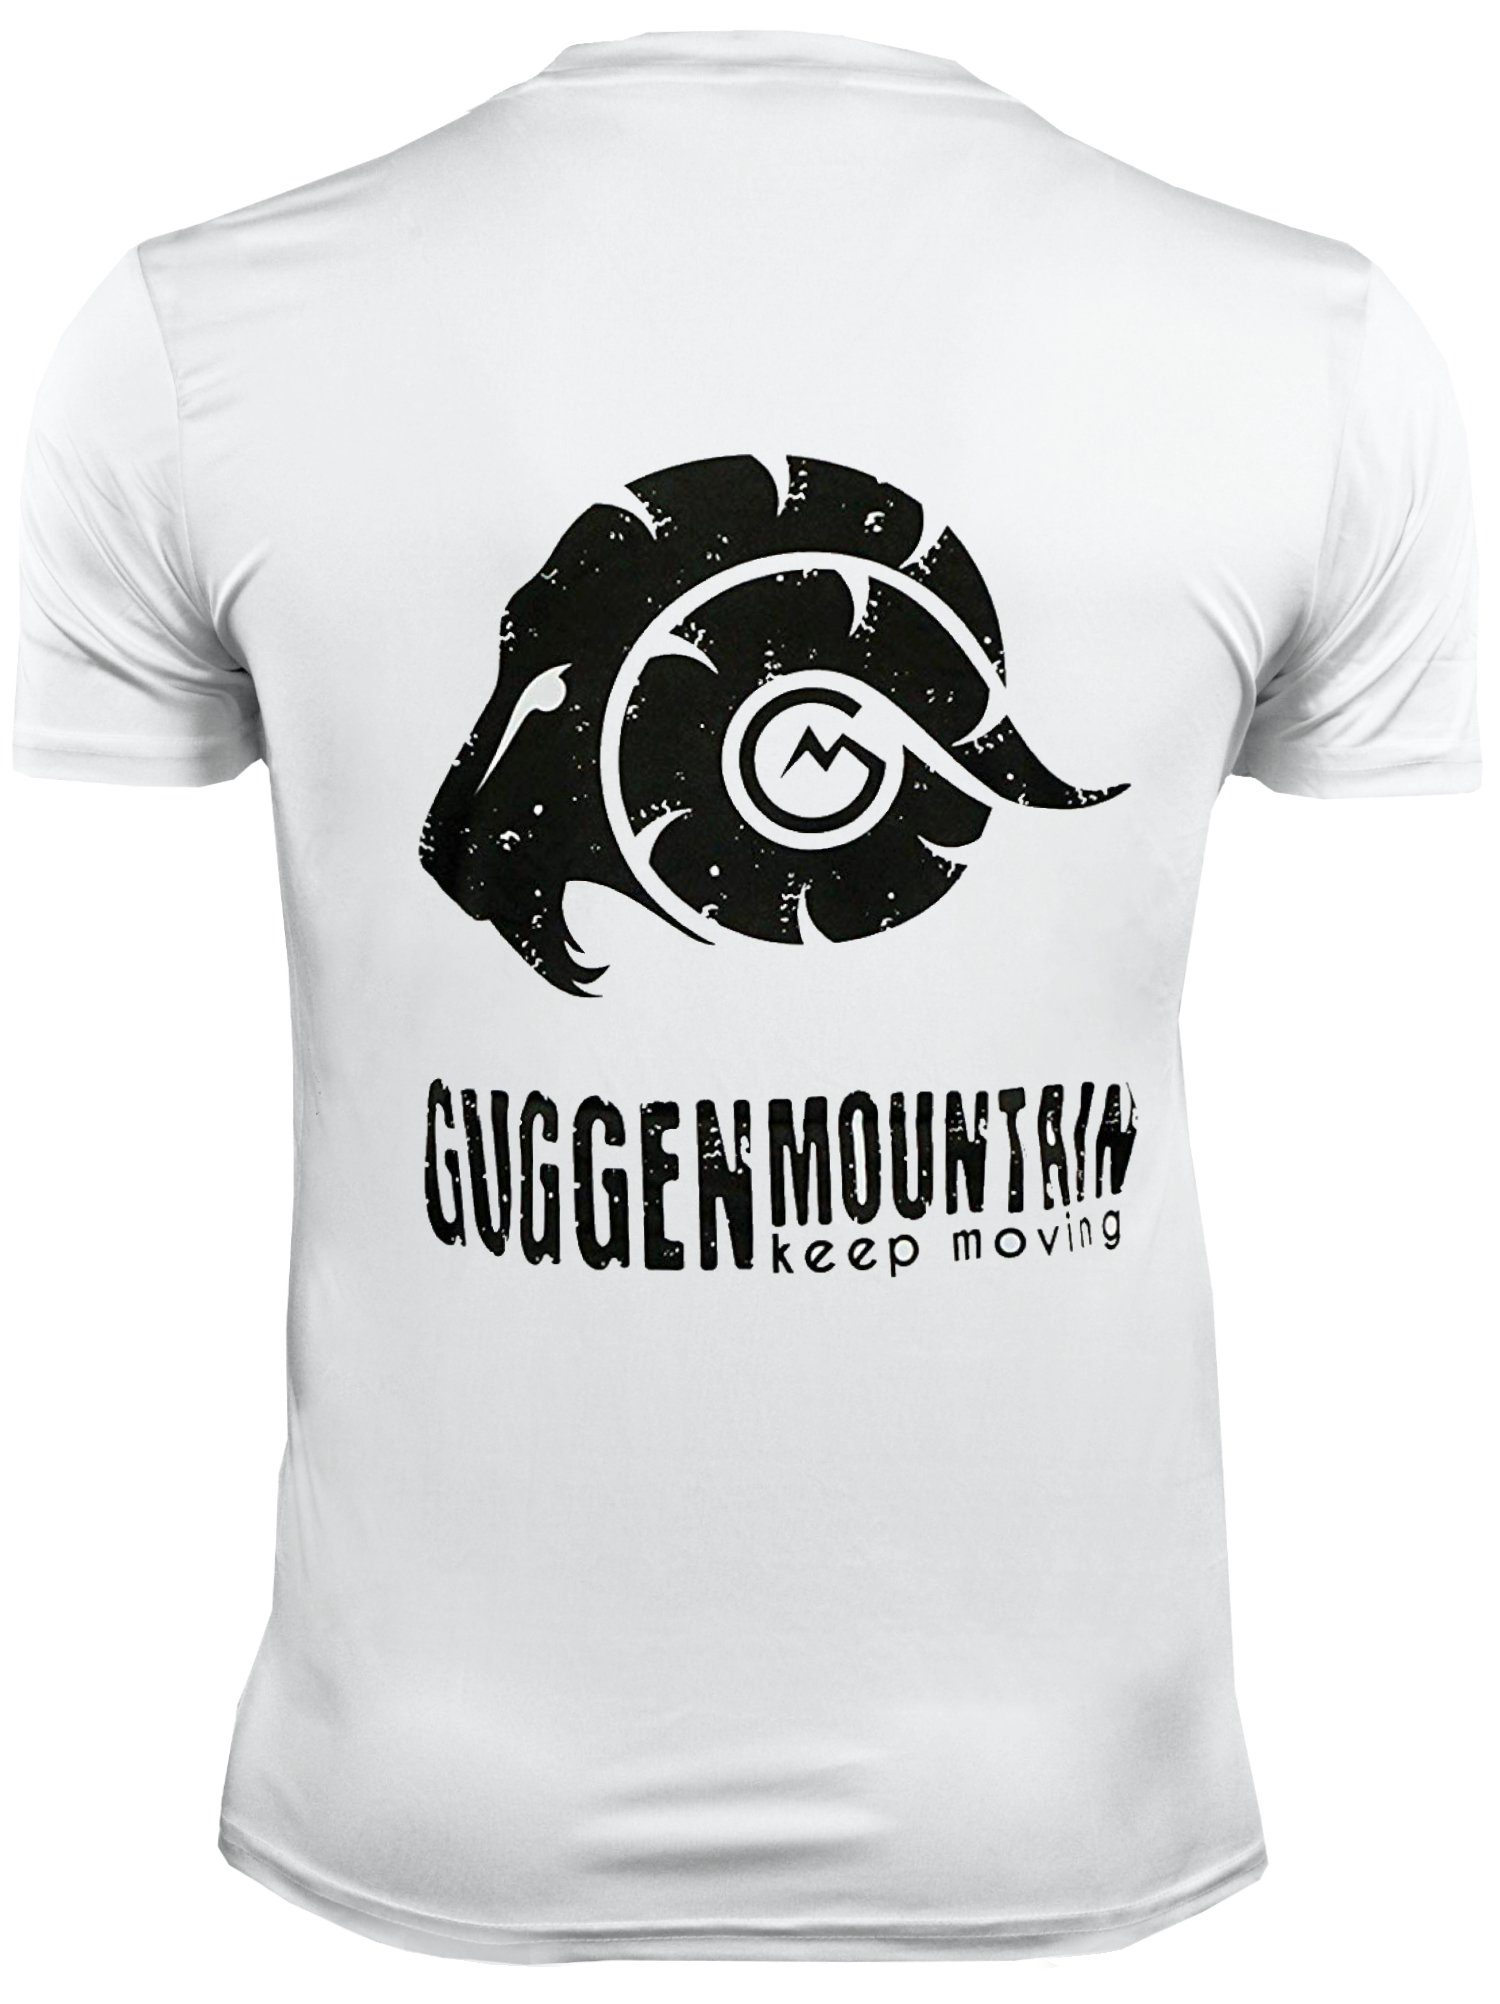 GUGGEN Mountain Funktionsshirt Kurzarm Logo Funktionsshirt Sportshirt in Unifarben, FW04 Herren Weiss-MIT-Logo T-Shirt